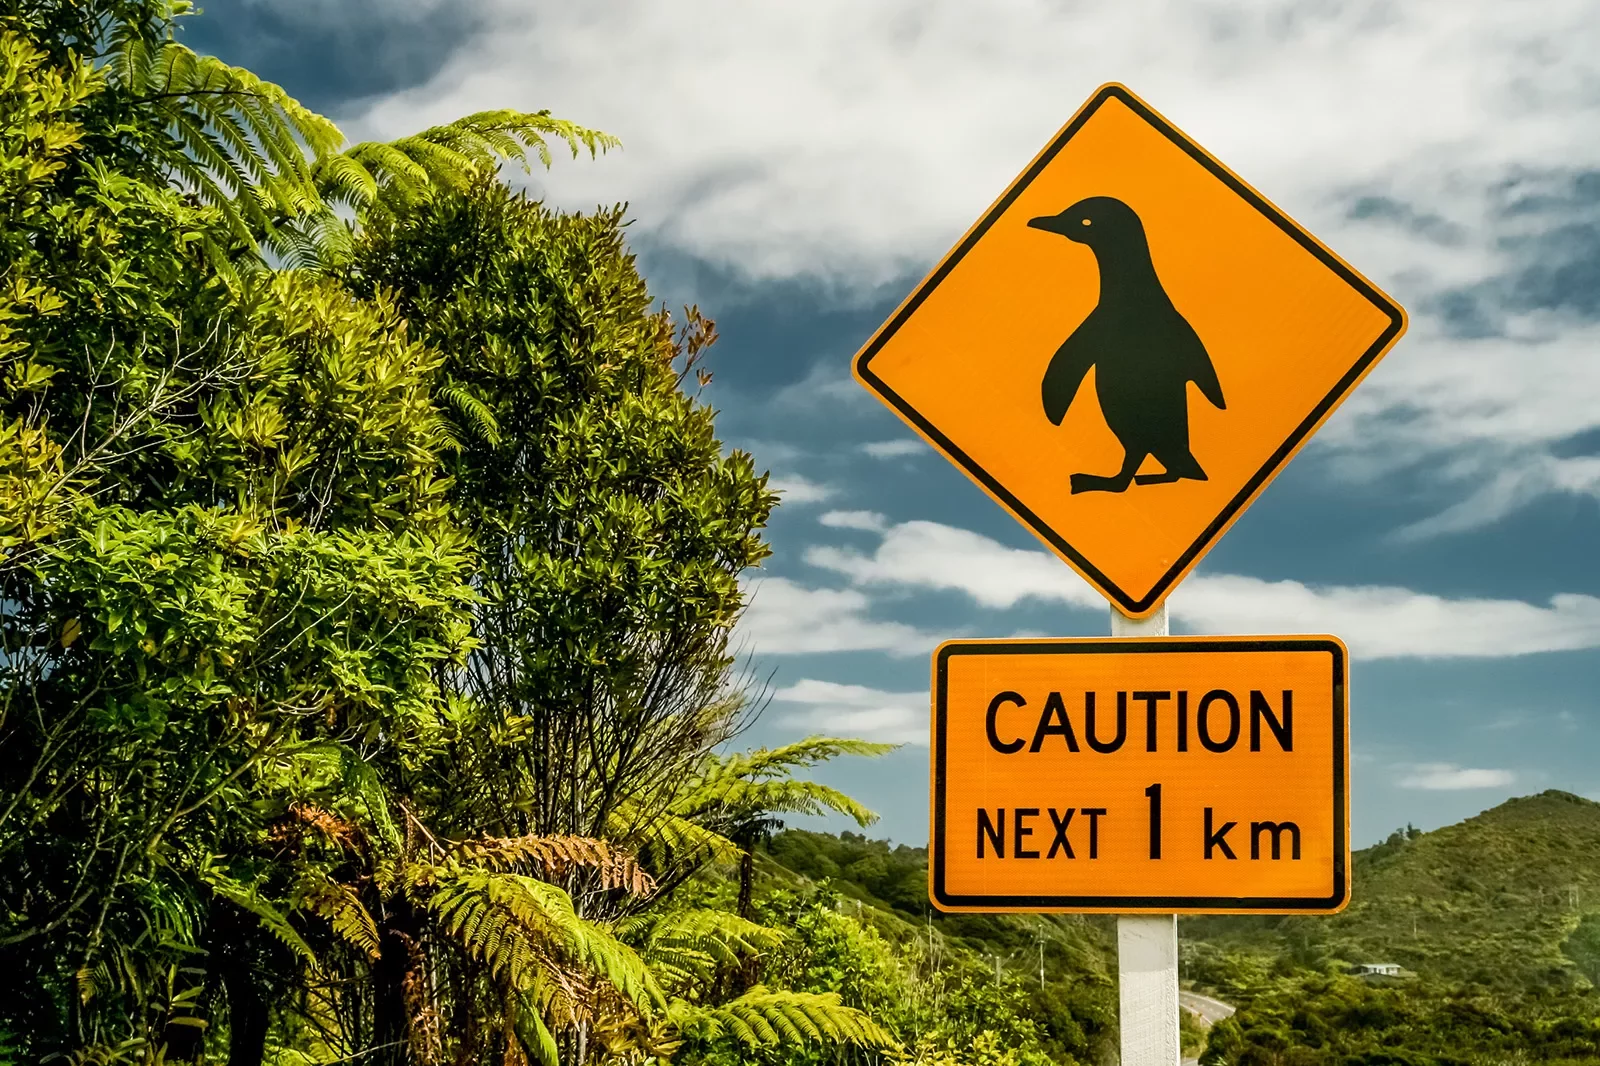 Penguin crossing sign in New Zealand